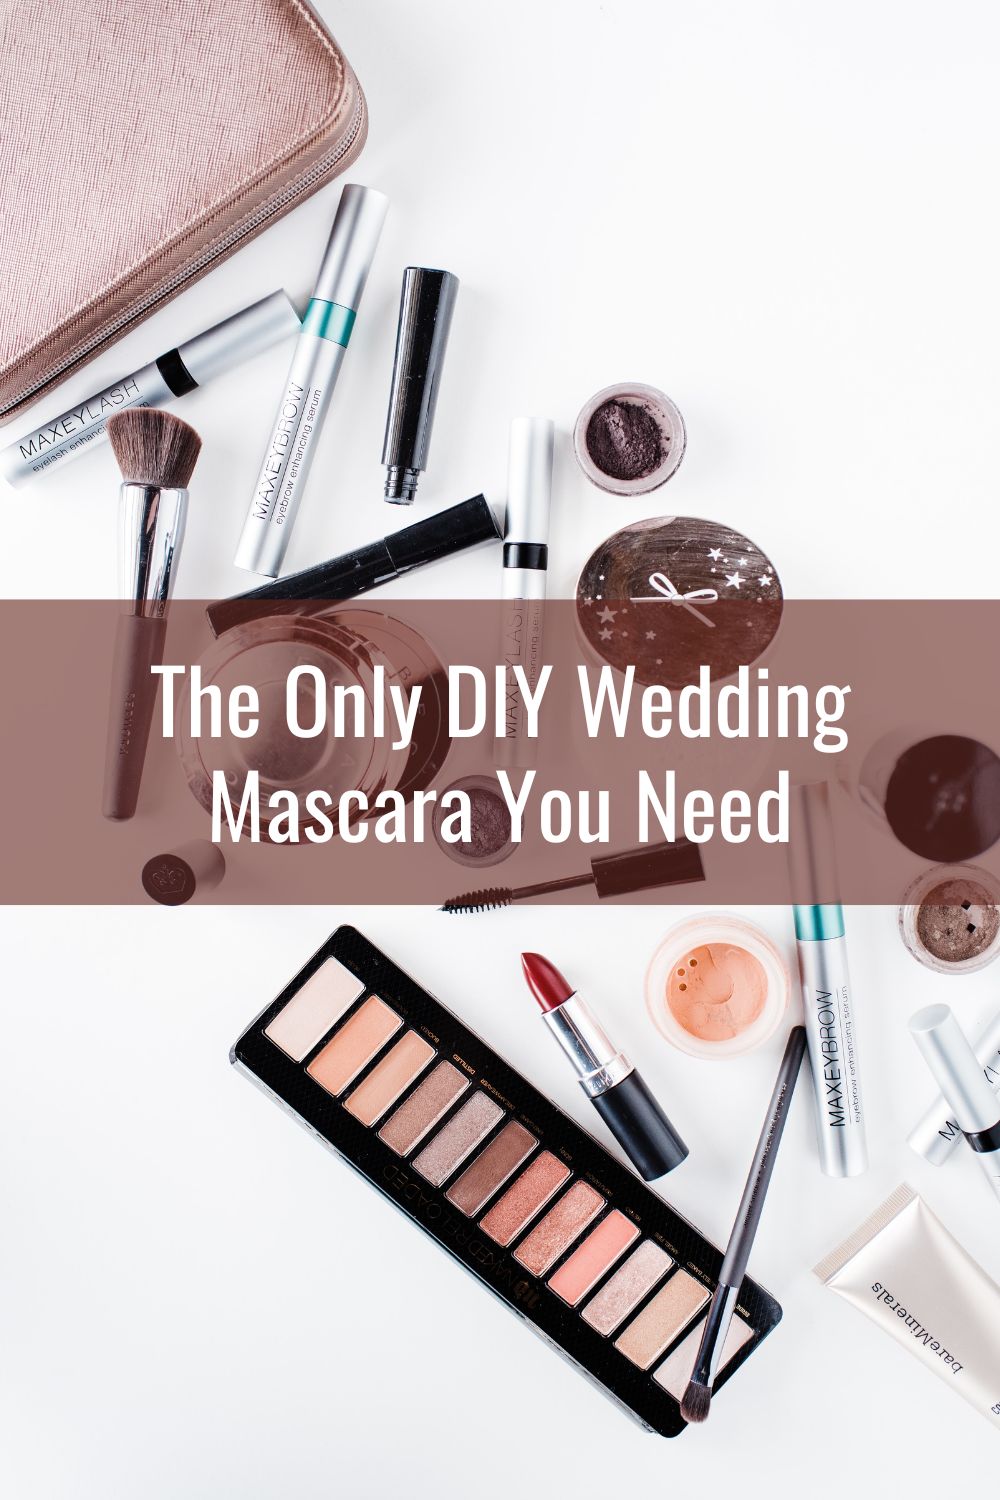 DIY wedding makeup mascara